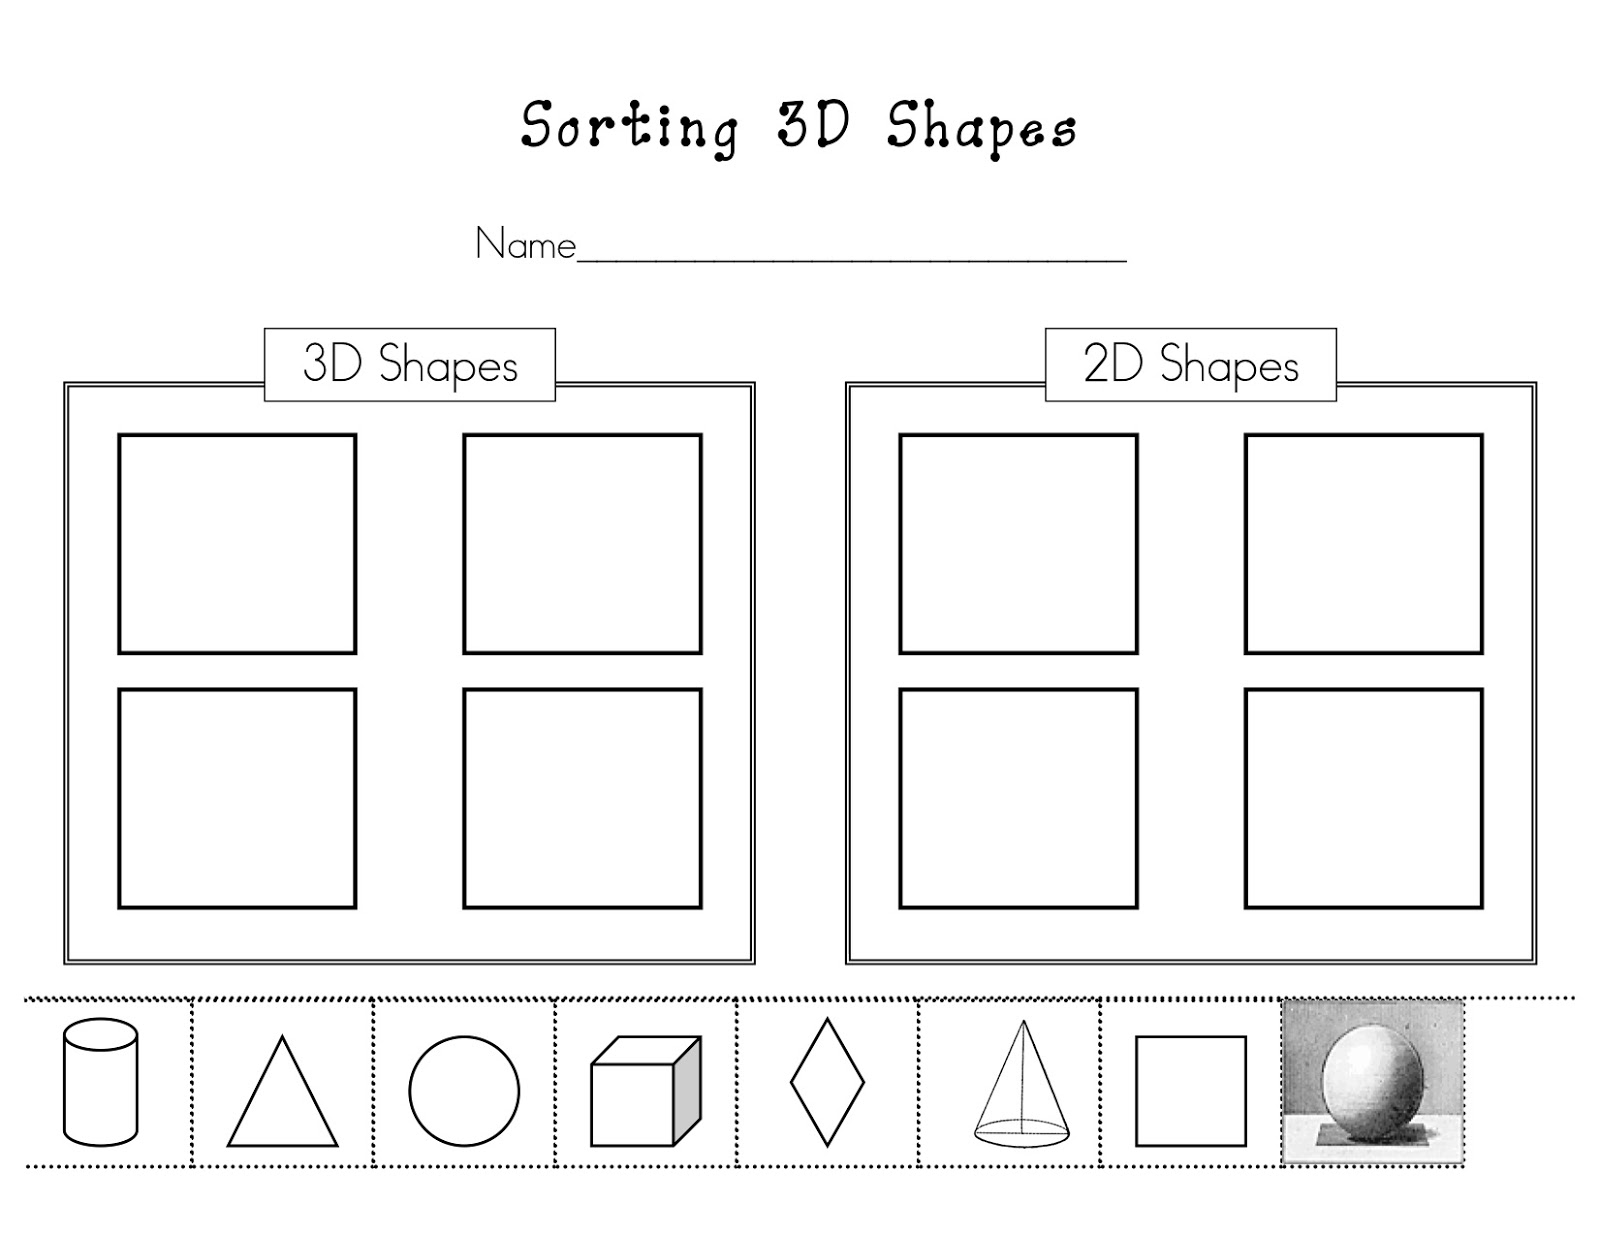 7 Images of Sorting Shapes Worksheets For Kindergarten